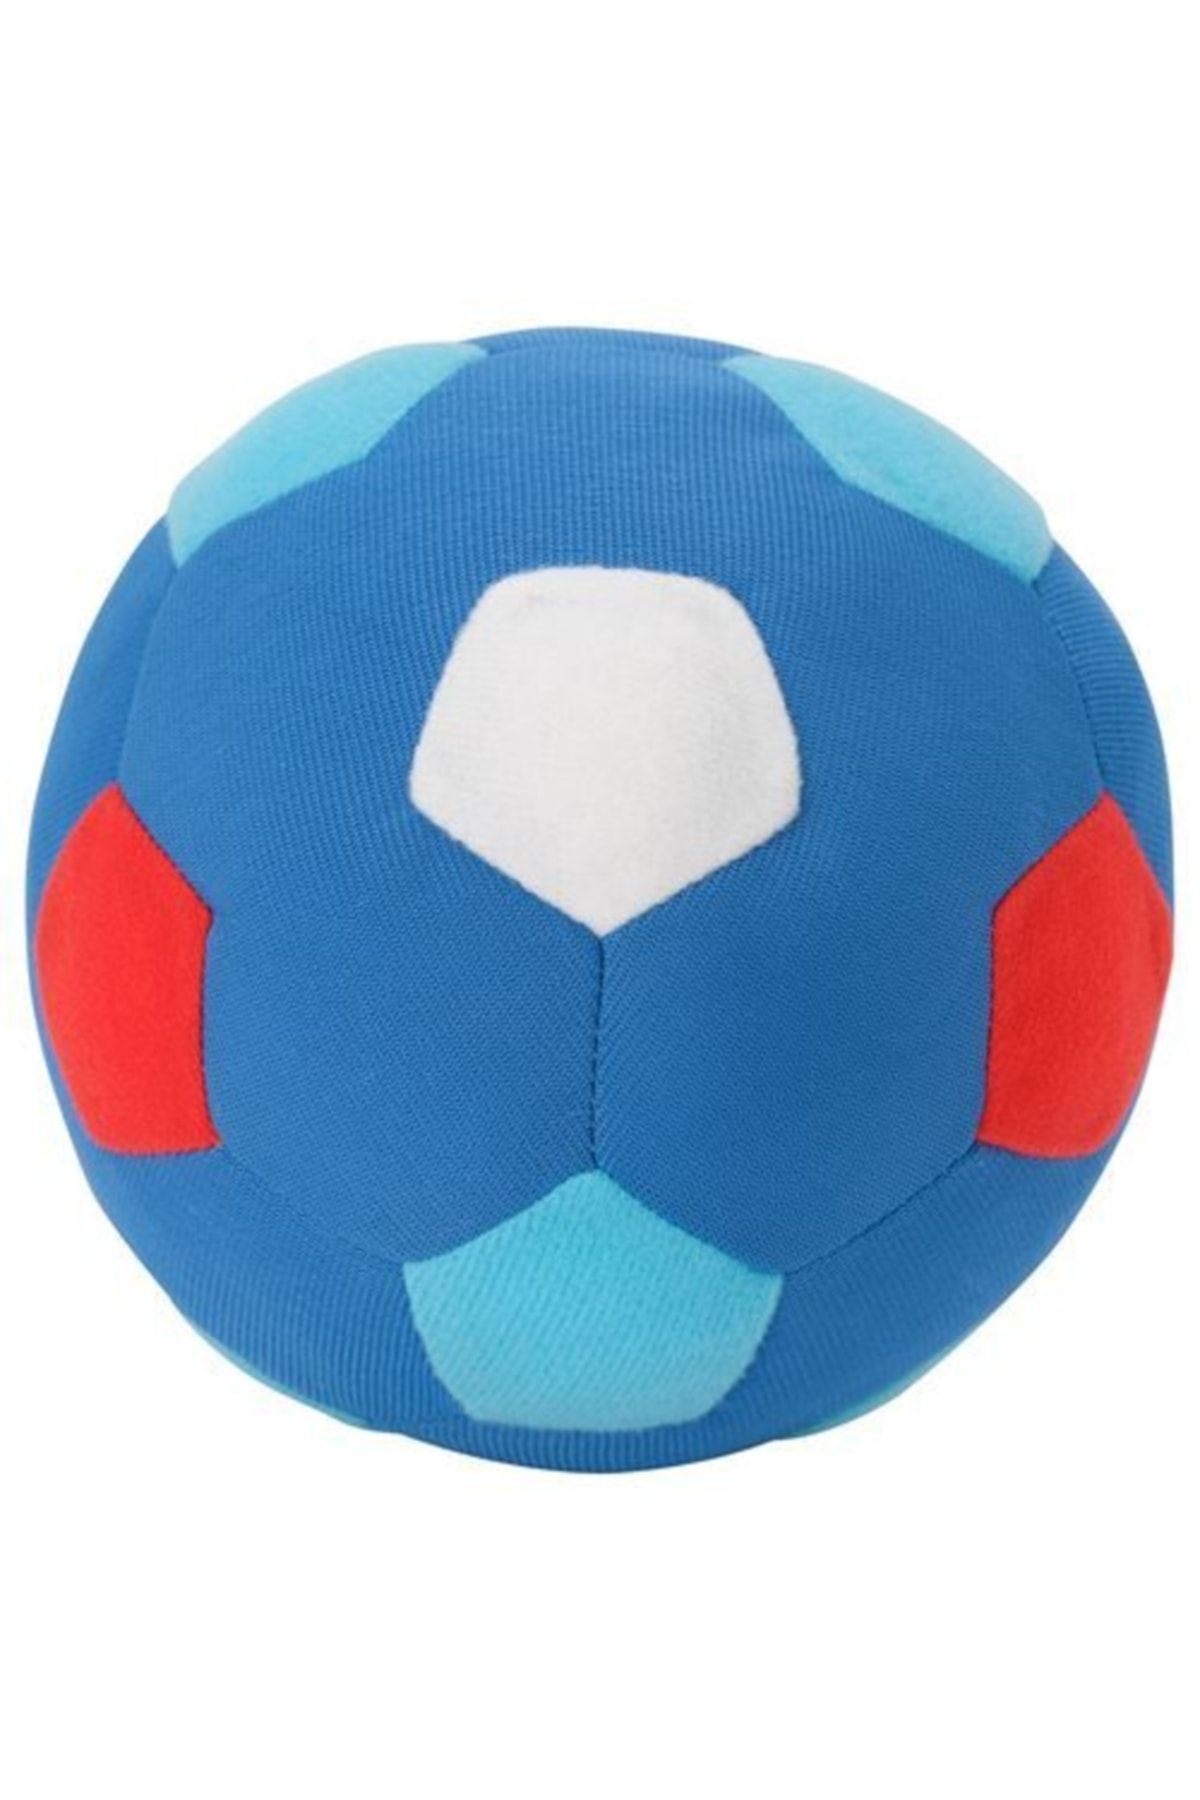 IKEA Sparka 12 Cm Mavi Top Futbol Topu Yumuşak Peluş Oyuncak